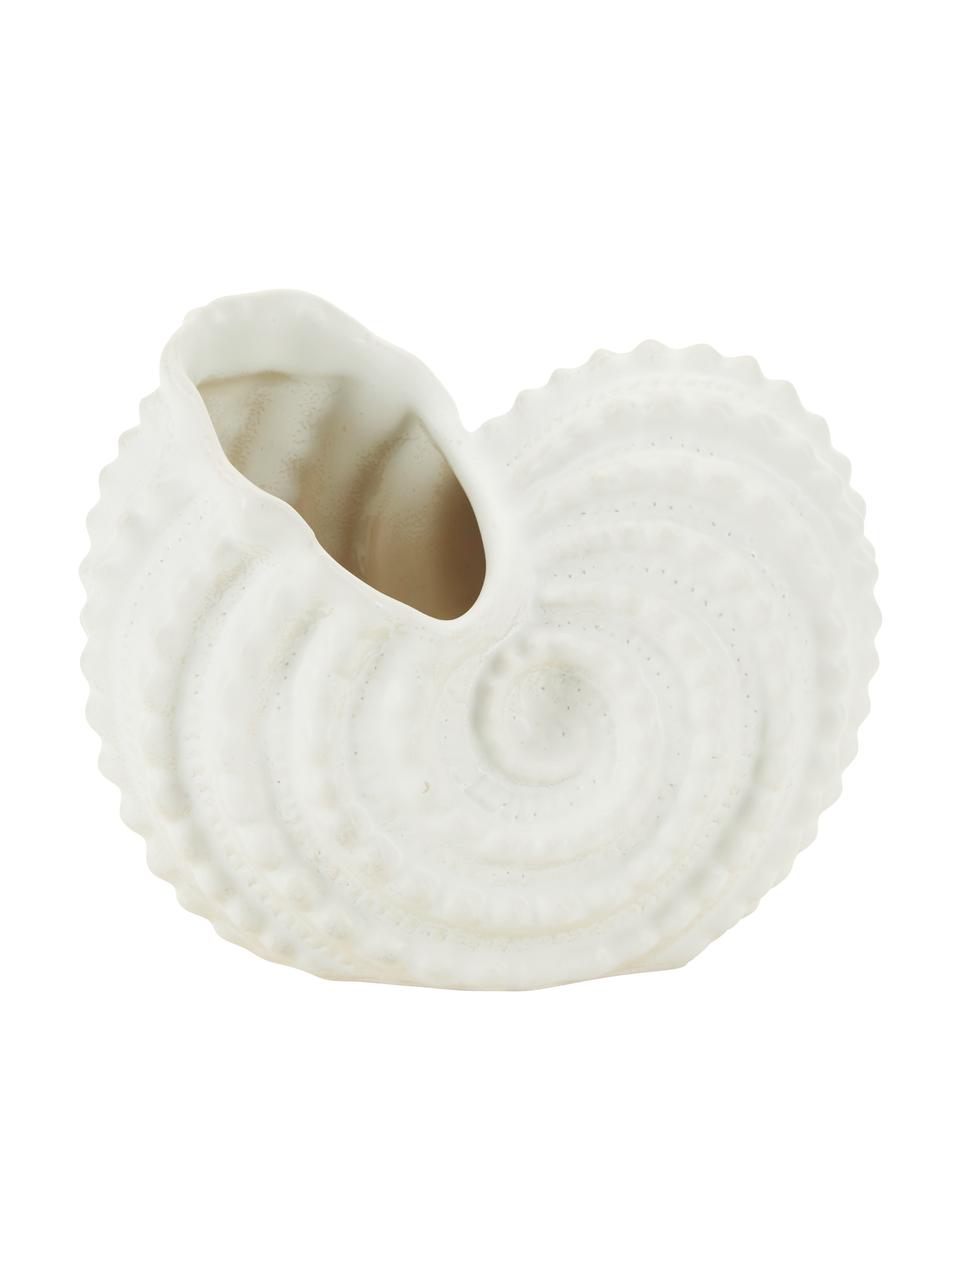 Deko-Objekt Snail aus Steingut in Weiß, Steingut, Weiß, B 13 x H 15 cm